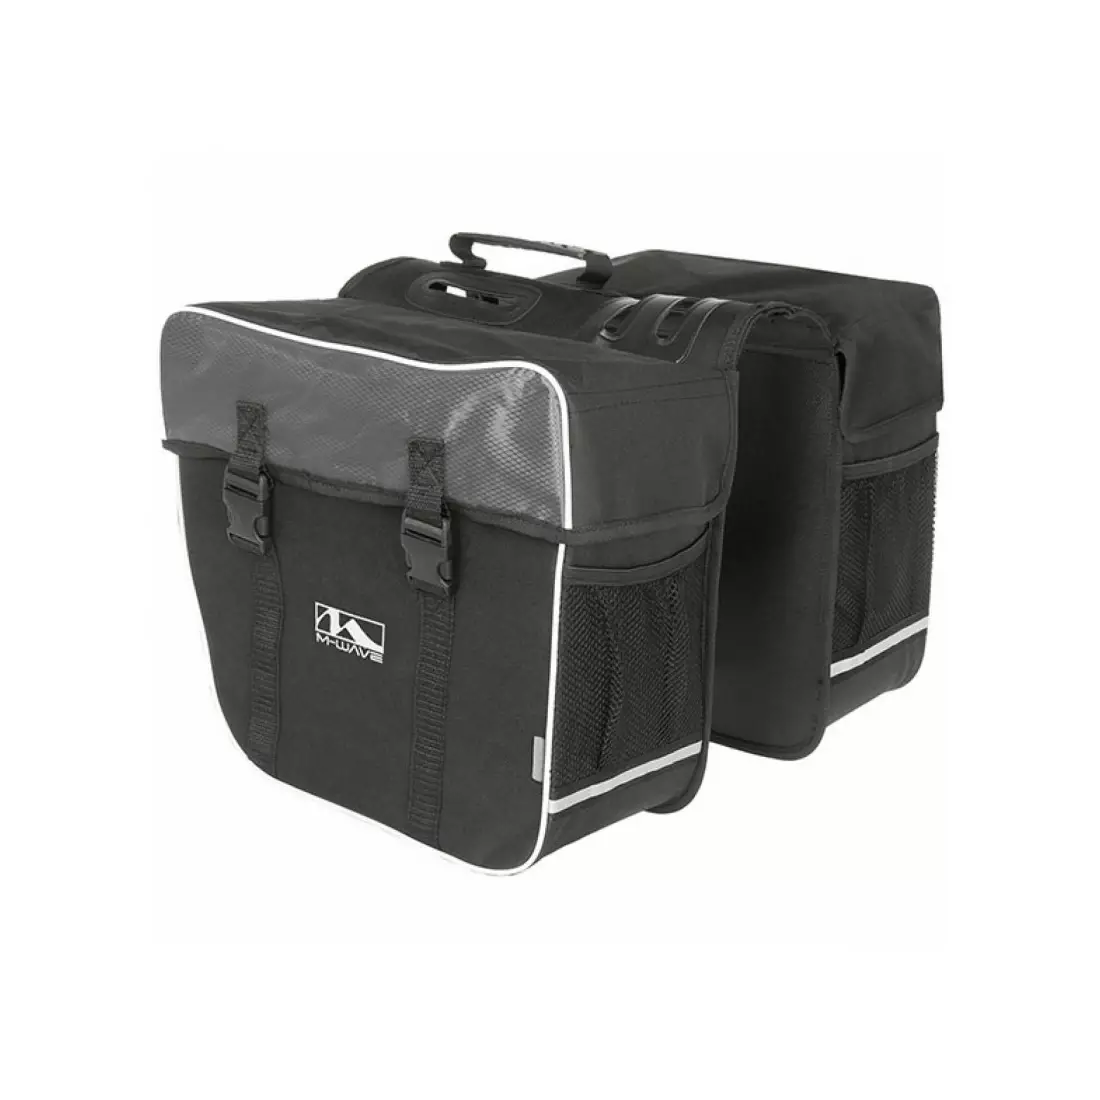 M-WAVE Fahrradtasche für den Kofferraum, doppelt, schwarz